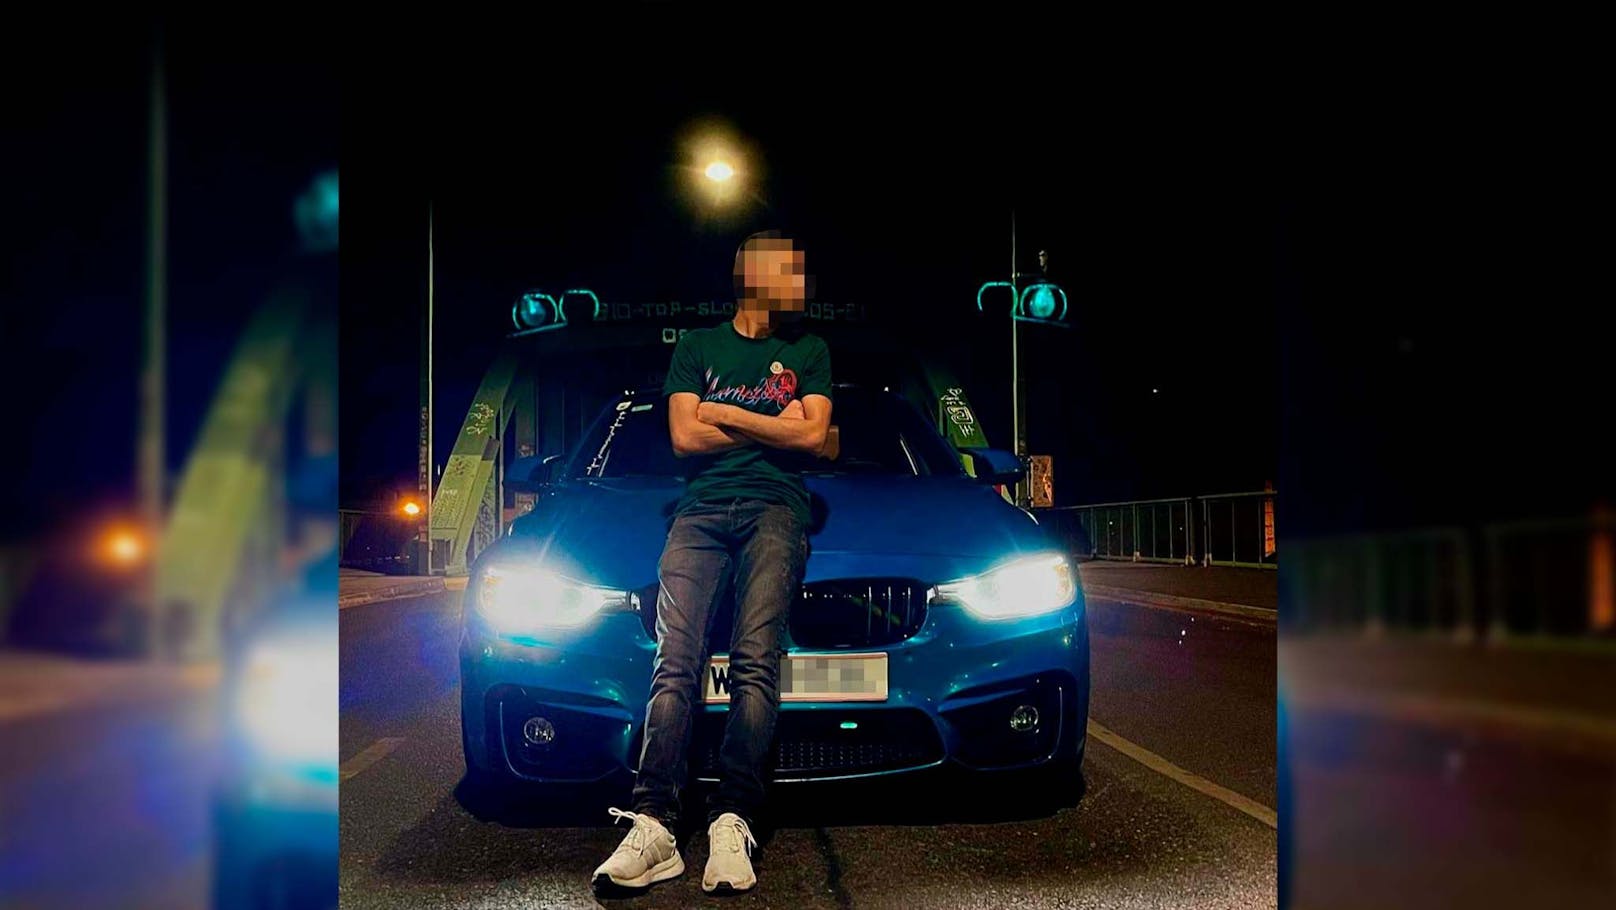 Wiener kassiert für getunten BMW 50.600 Euro (!) Strafe